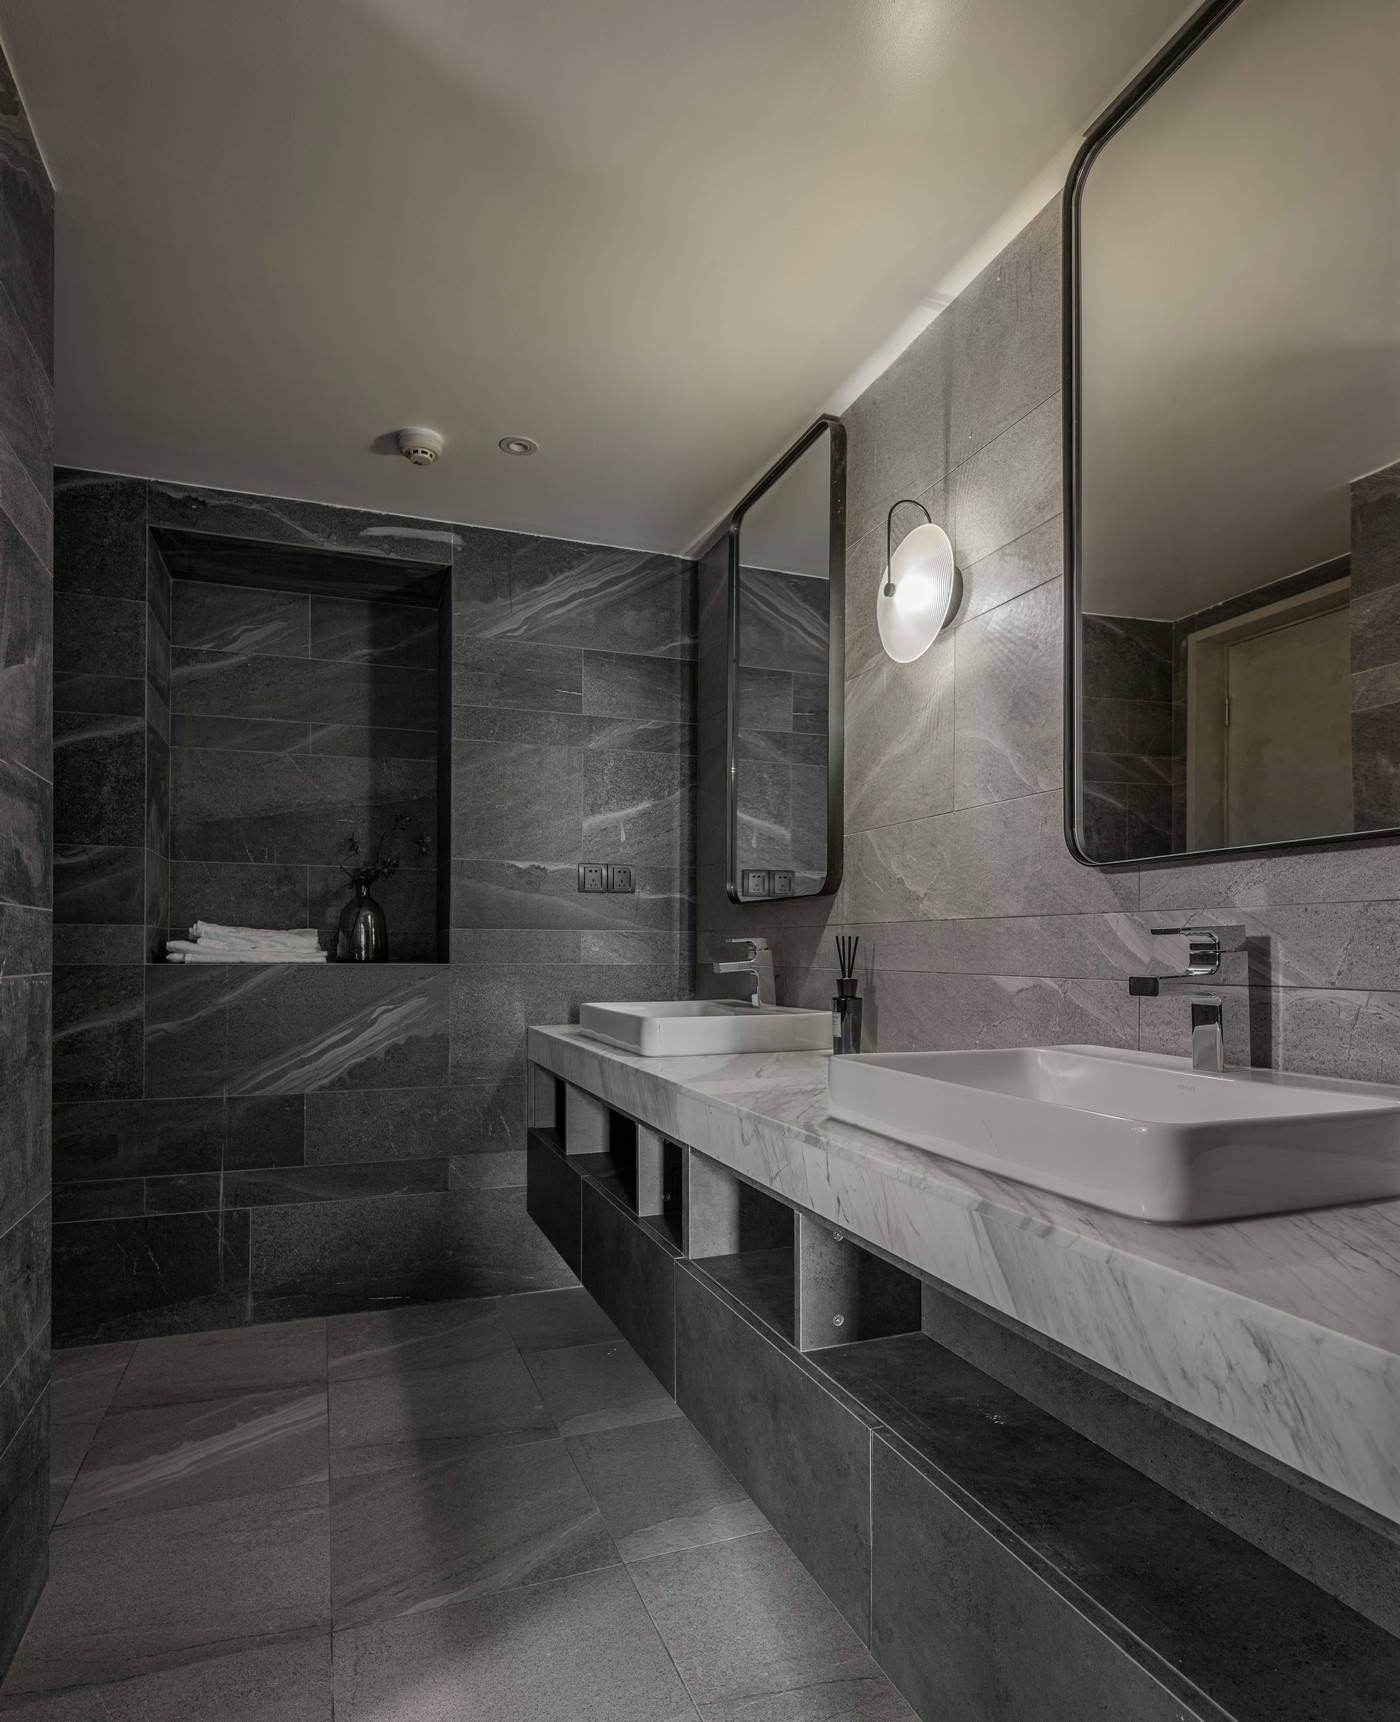 卫浴空间采用极简手法设计，灰白大理石色感相互融合，丰富造型感的同时不显杂乱